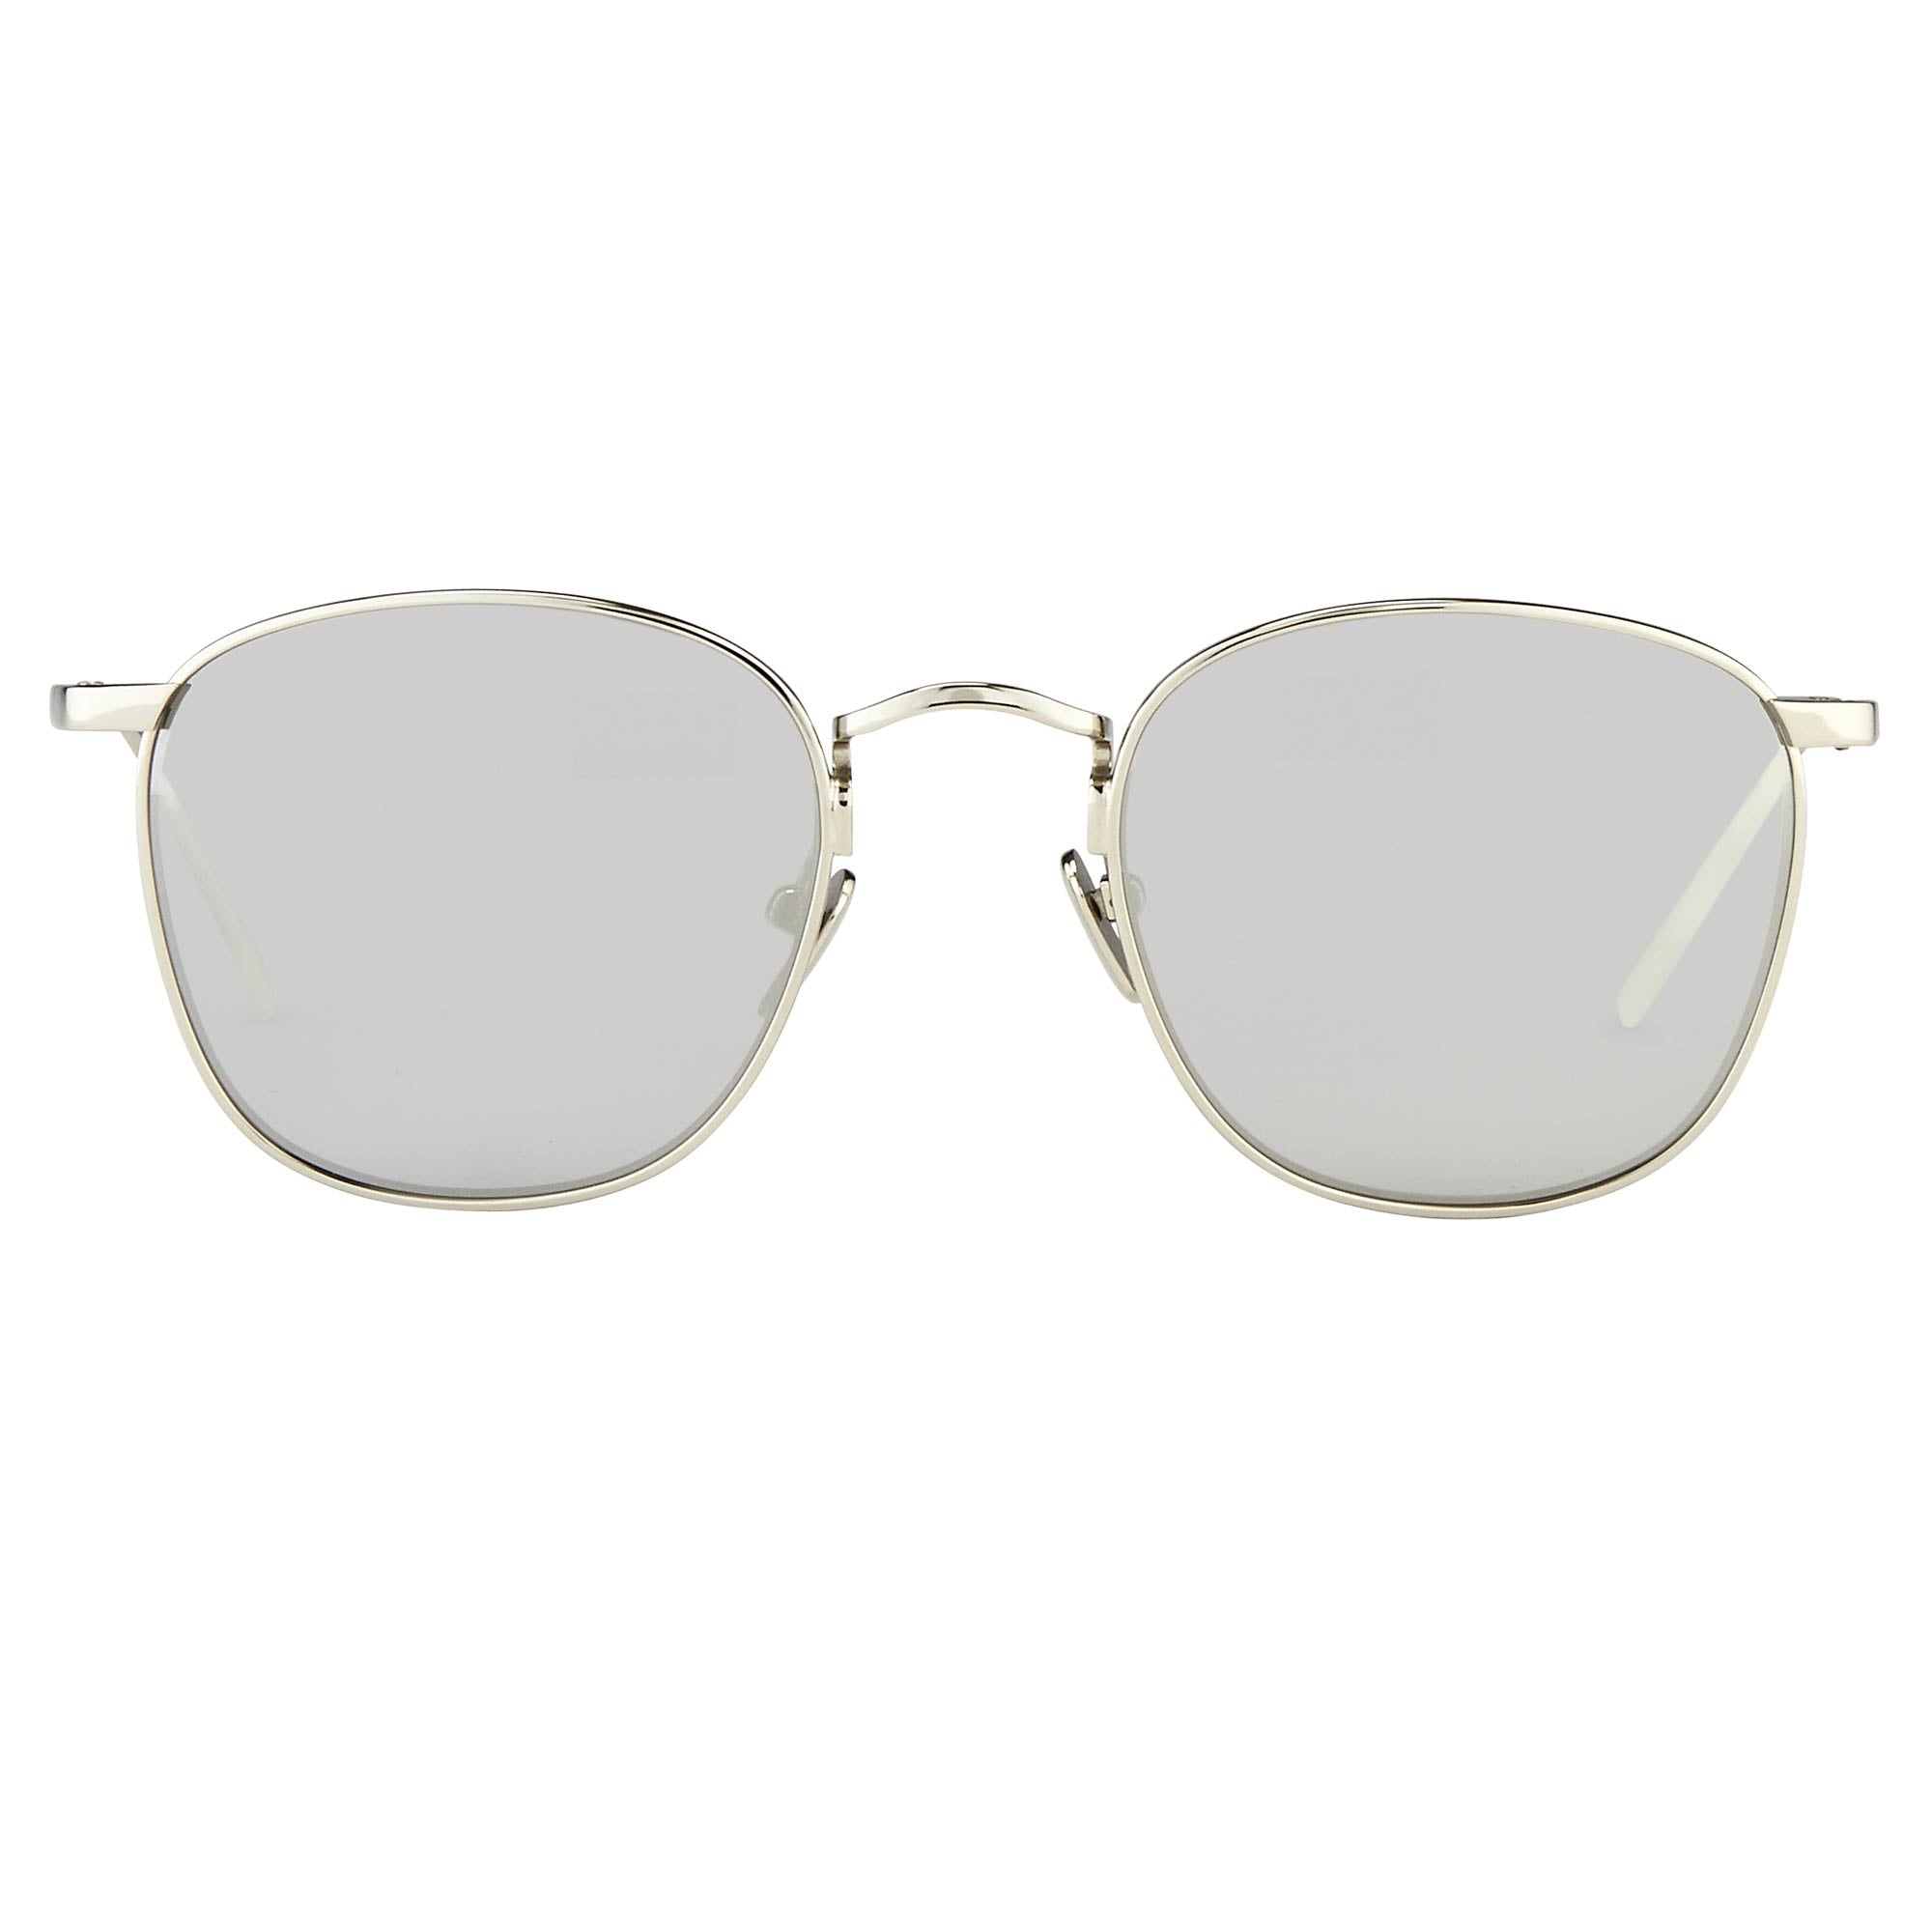 The Simon Square Sunglasses in White Gold Frame (C2)